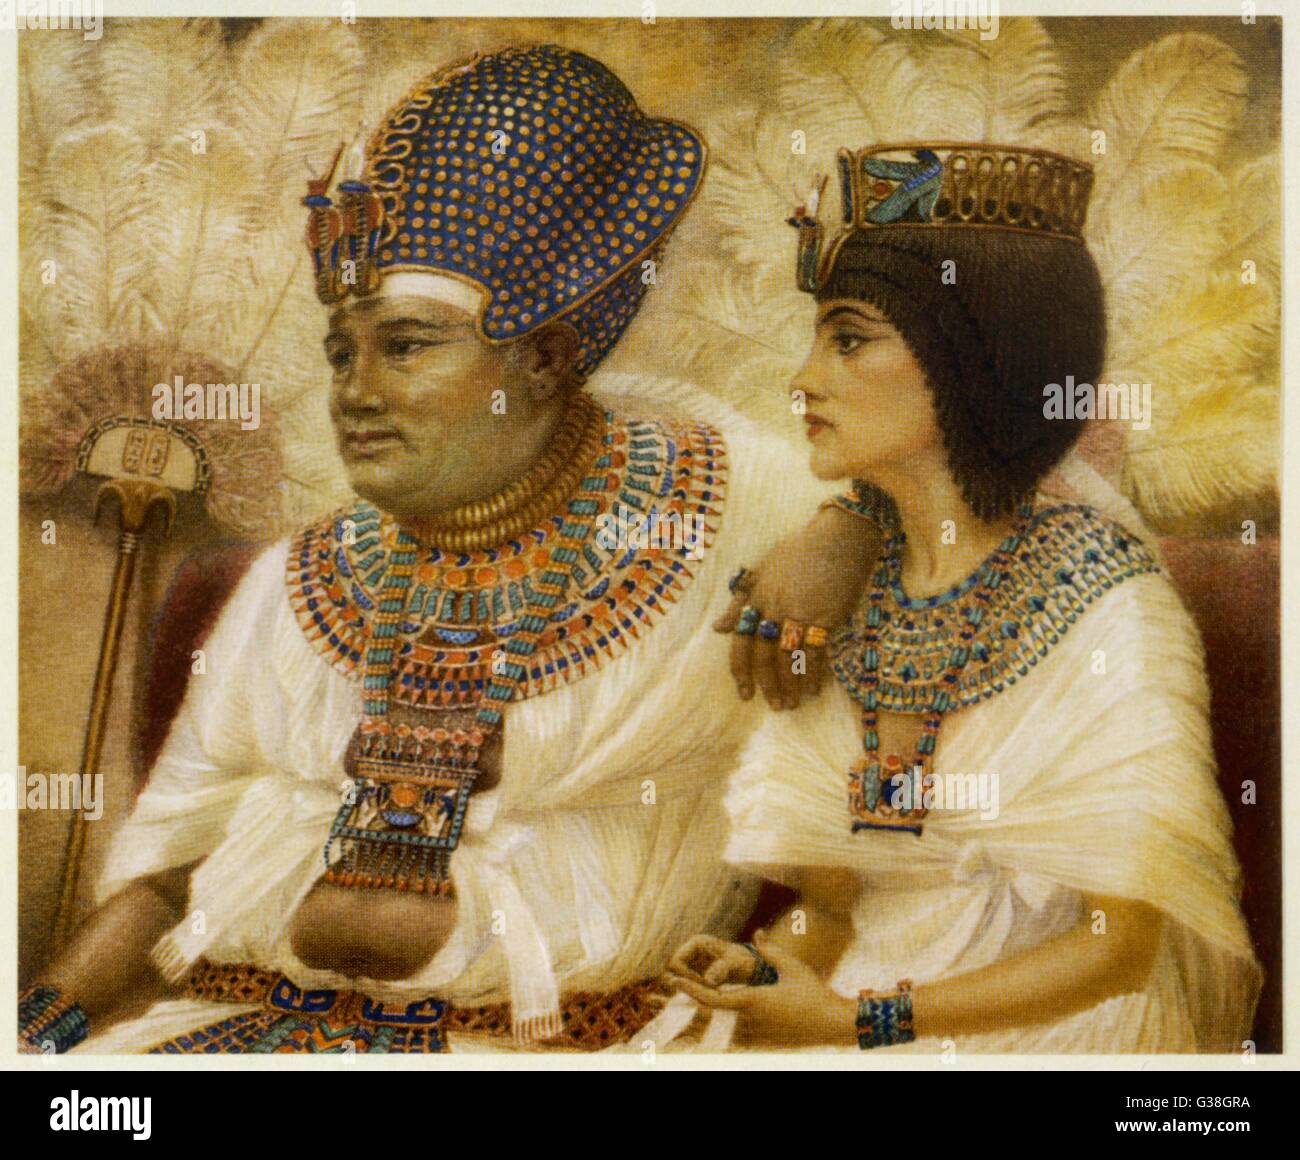 AMENHOTEP III, il Faraone con la regina Tiy (XVIII dinastia) la loro regola era uno dei più stabile e prospera nella storia egiziana Data: regnò 1386-1349 A.C. Foto Stock